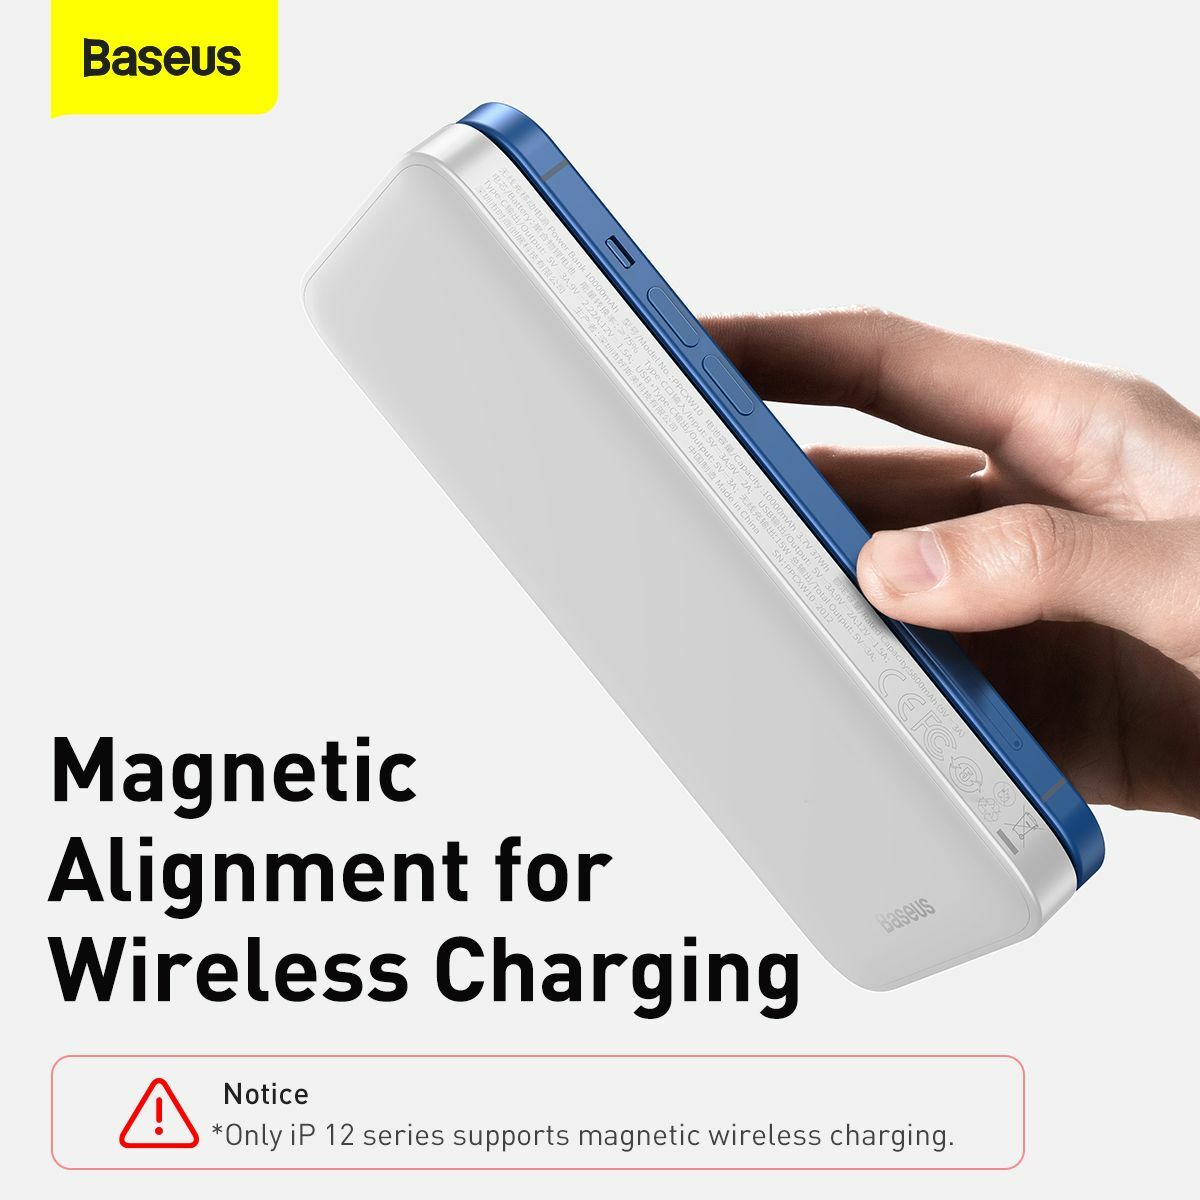 Baseus Power Bank Magnetic mágneses csatlakozás, vezeték nélküli töltés, gyors töltés, 10000 mAh, 20W, fehér (PPMT-02)